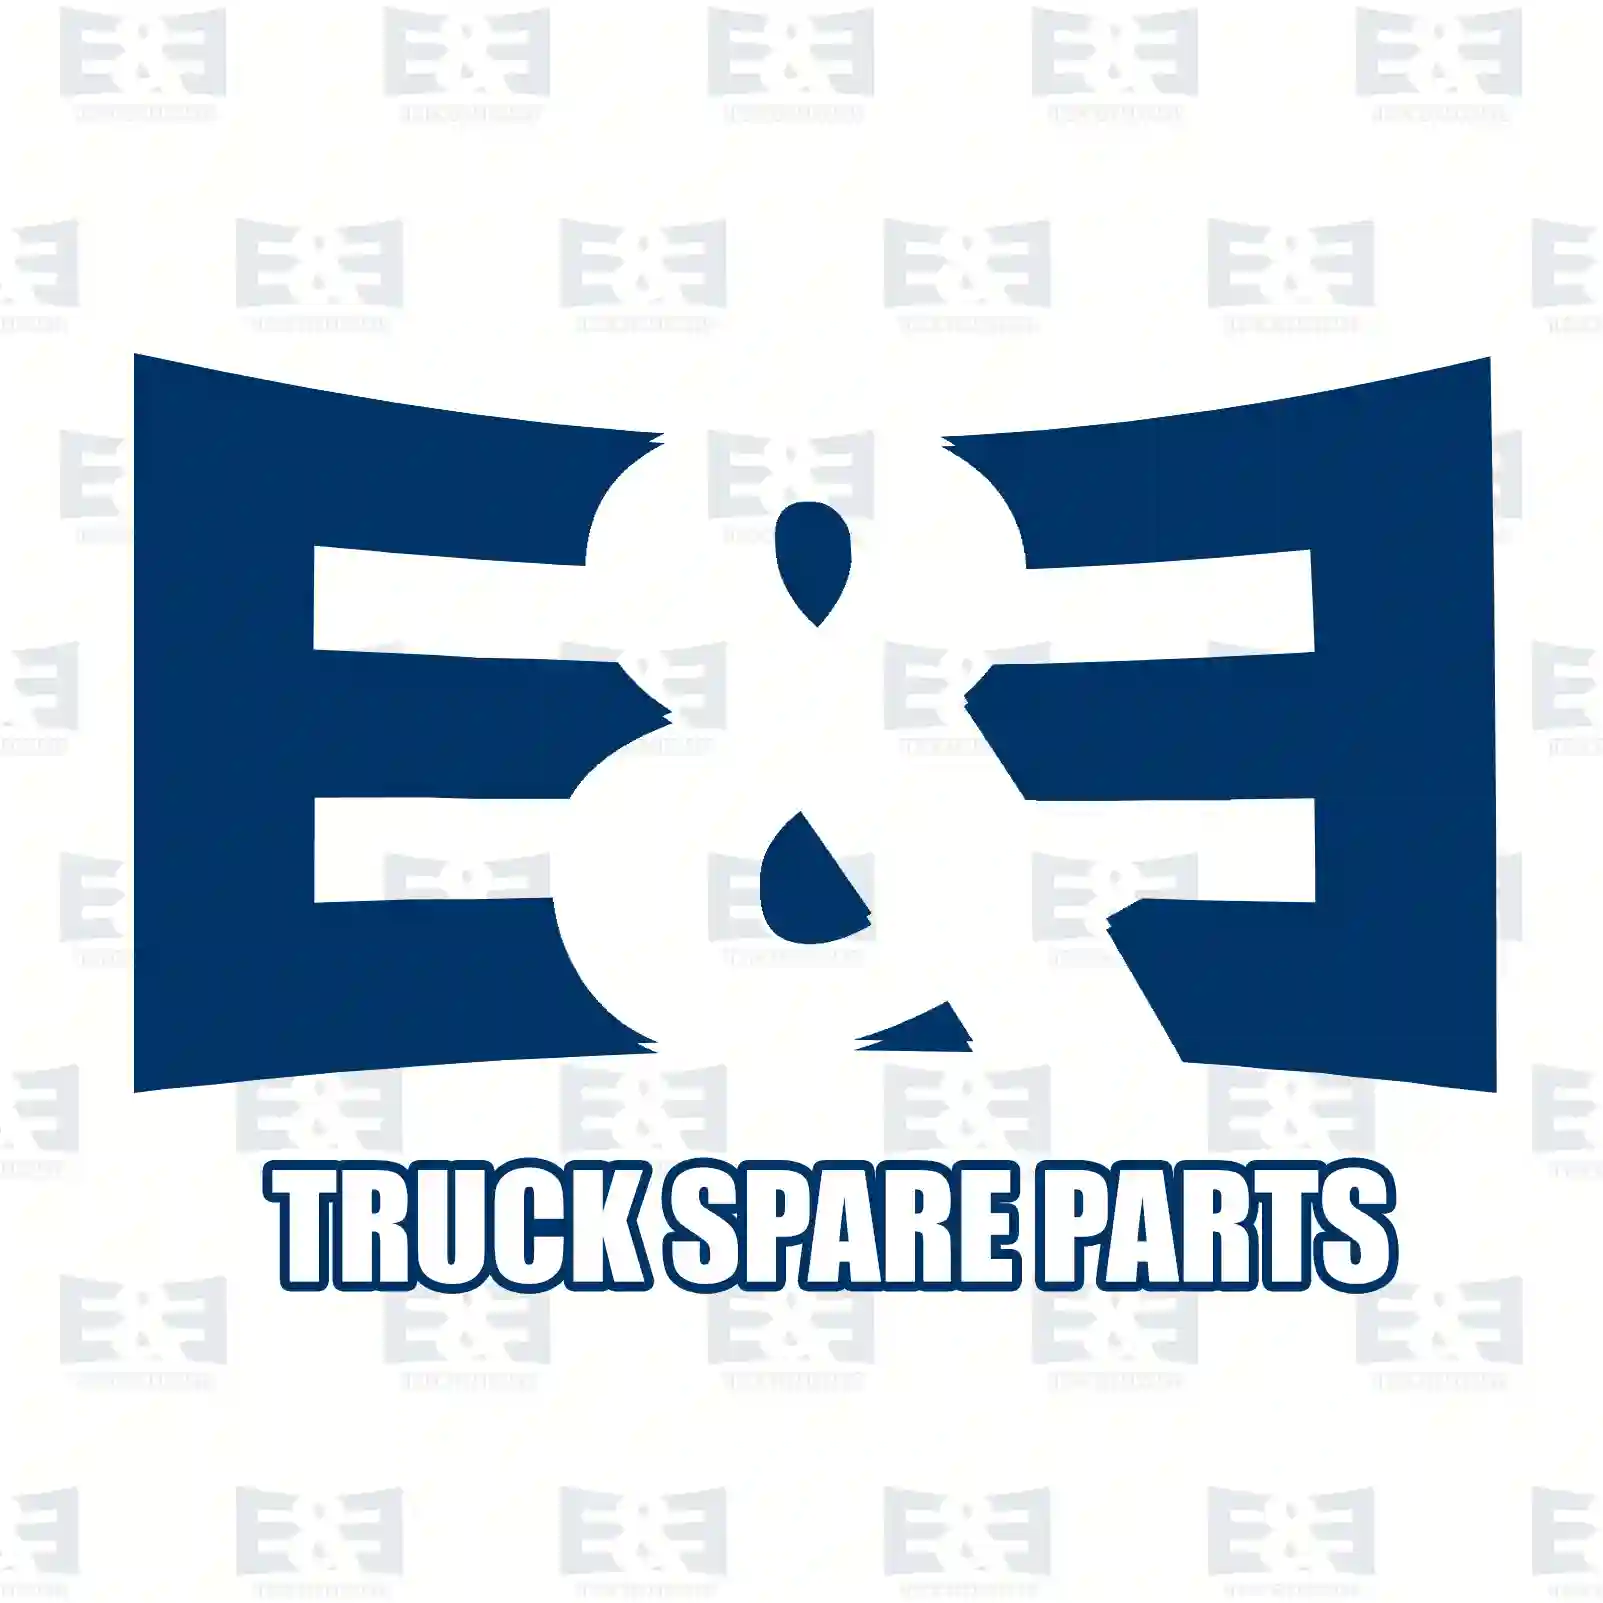 Turn signal lamp, 2E2298270, 5010271775, ZG21155-0008 ||  2E2298270 E&E Truck Spare Parts | Truck Spare Parts, Auotomotive Spare Parts Turn signal lamp, 2E2298270, 5010271775, ZG21155-0008 ||  2E2298270 E&E Truck Spare Parts | Truck Spare Parts, Auotomotive Spare Parts